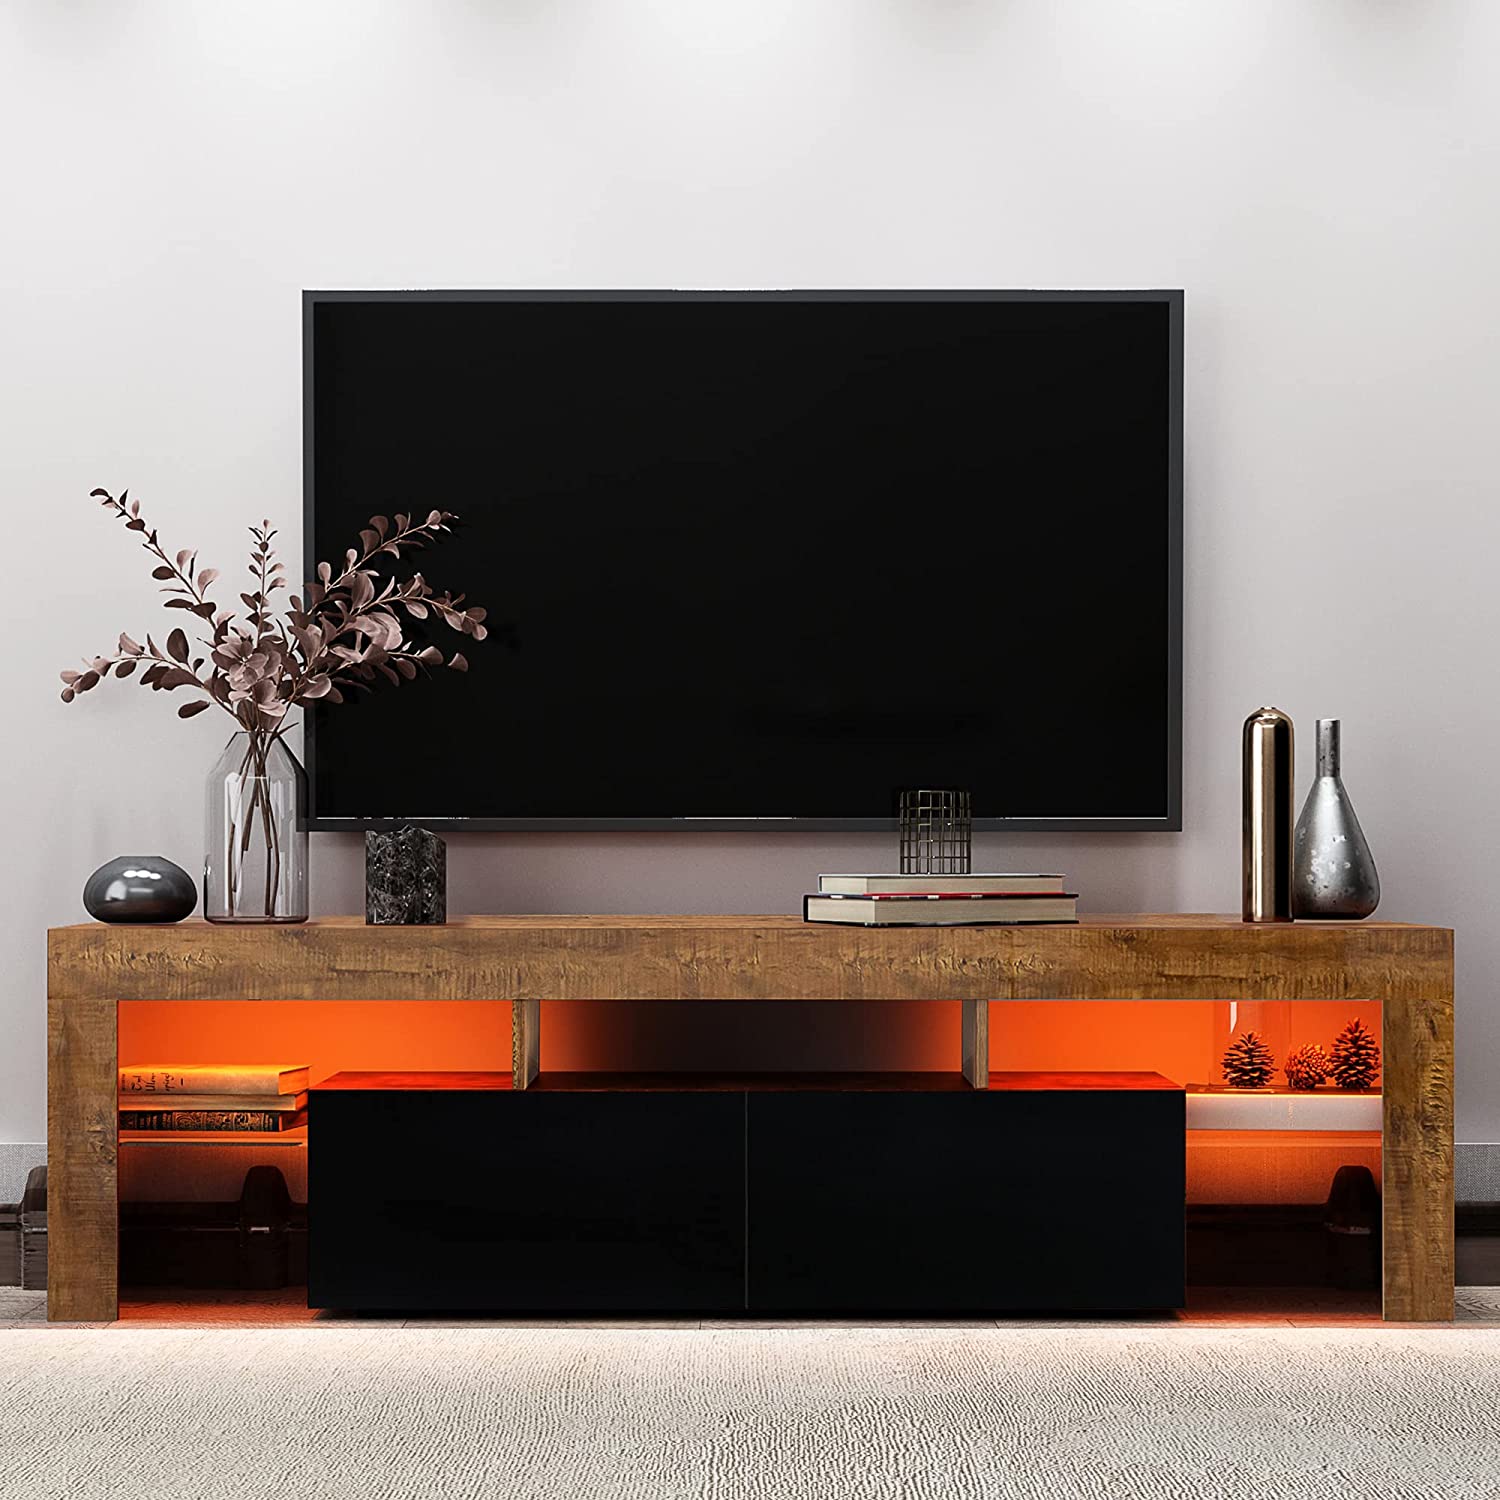 LED 电视架高光电视架 RGB LED 灯木质仿古电视架电视游戏电视柜适用于客厅卧室